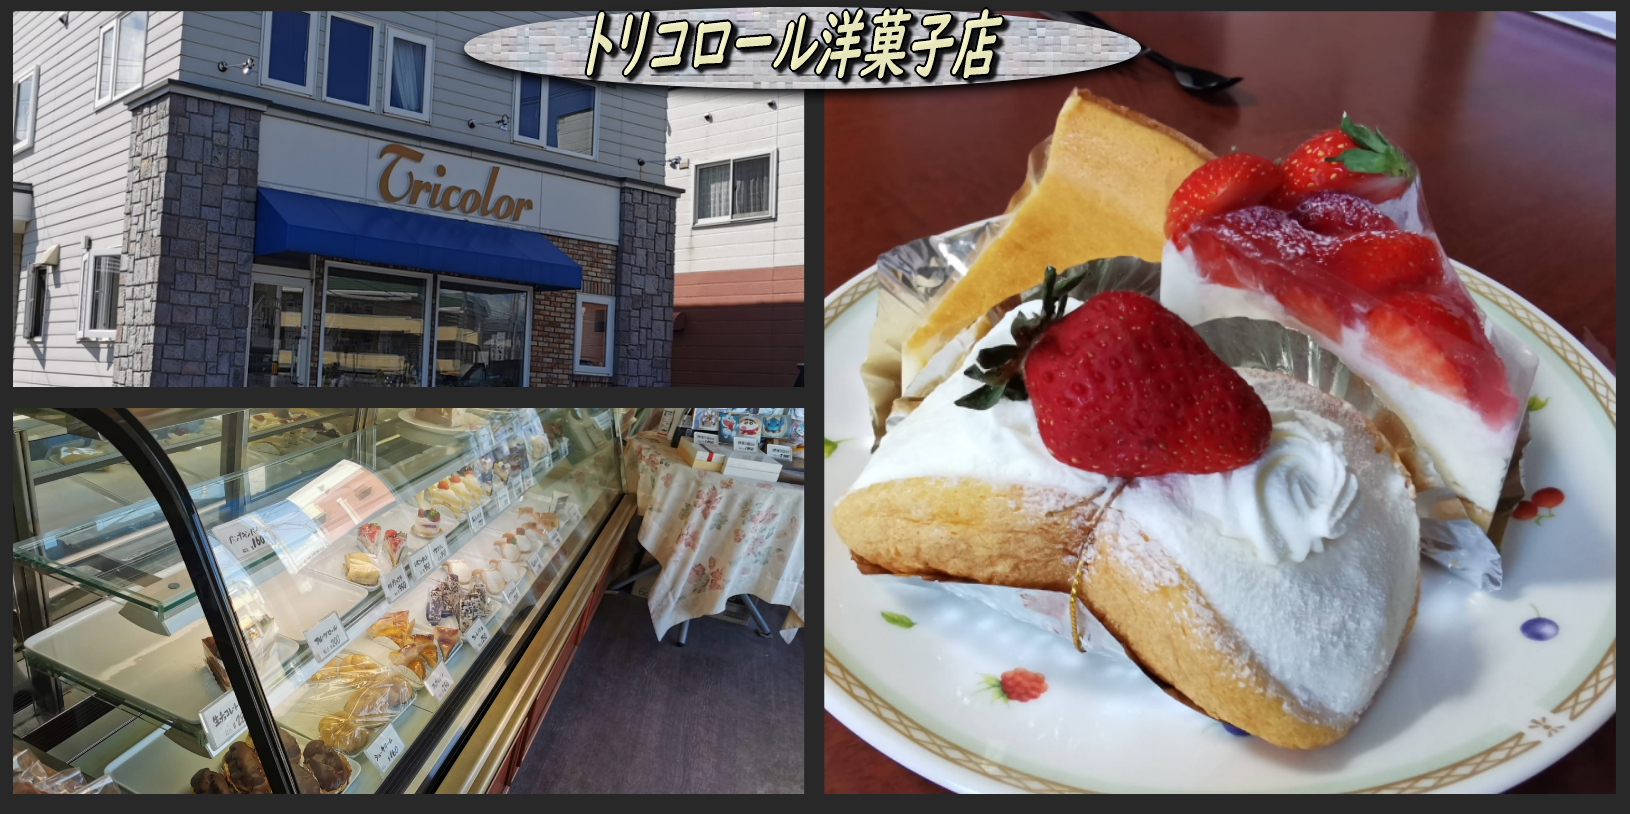 トリコロール洋菓子店 のケーキ 函館の飲み食い日記 Powered By ライブドアブログ